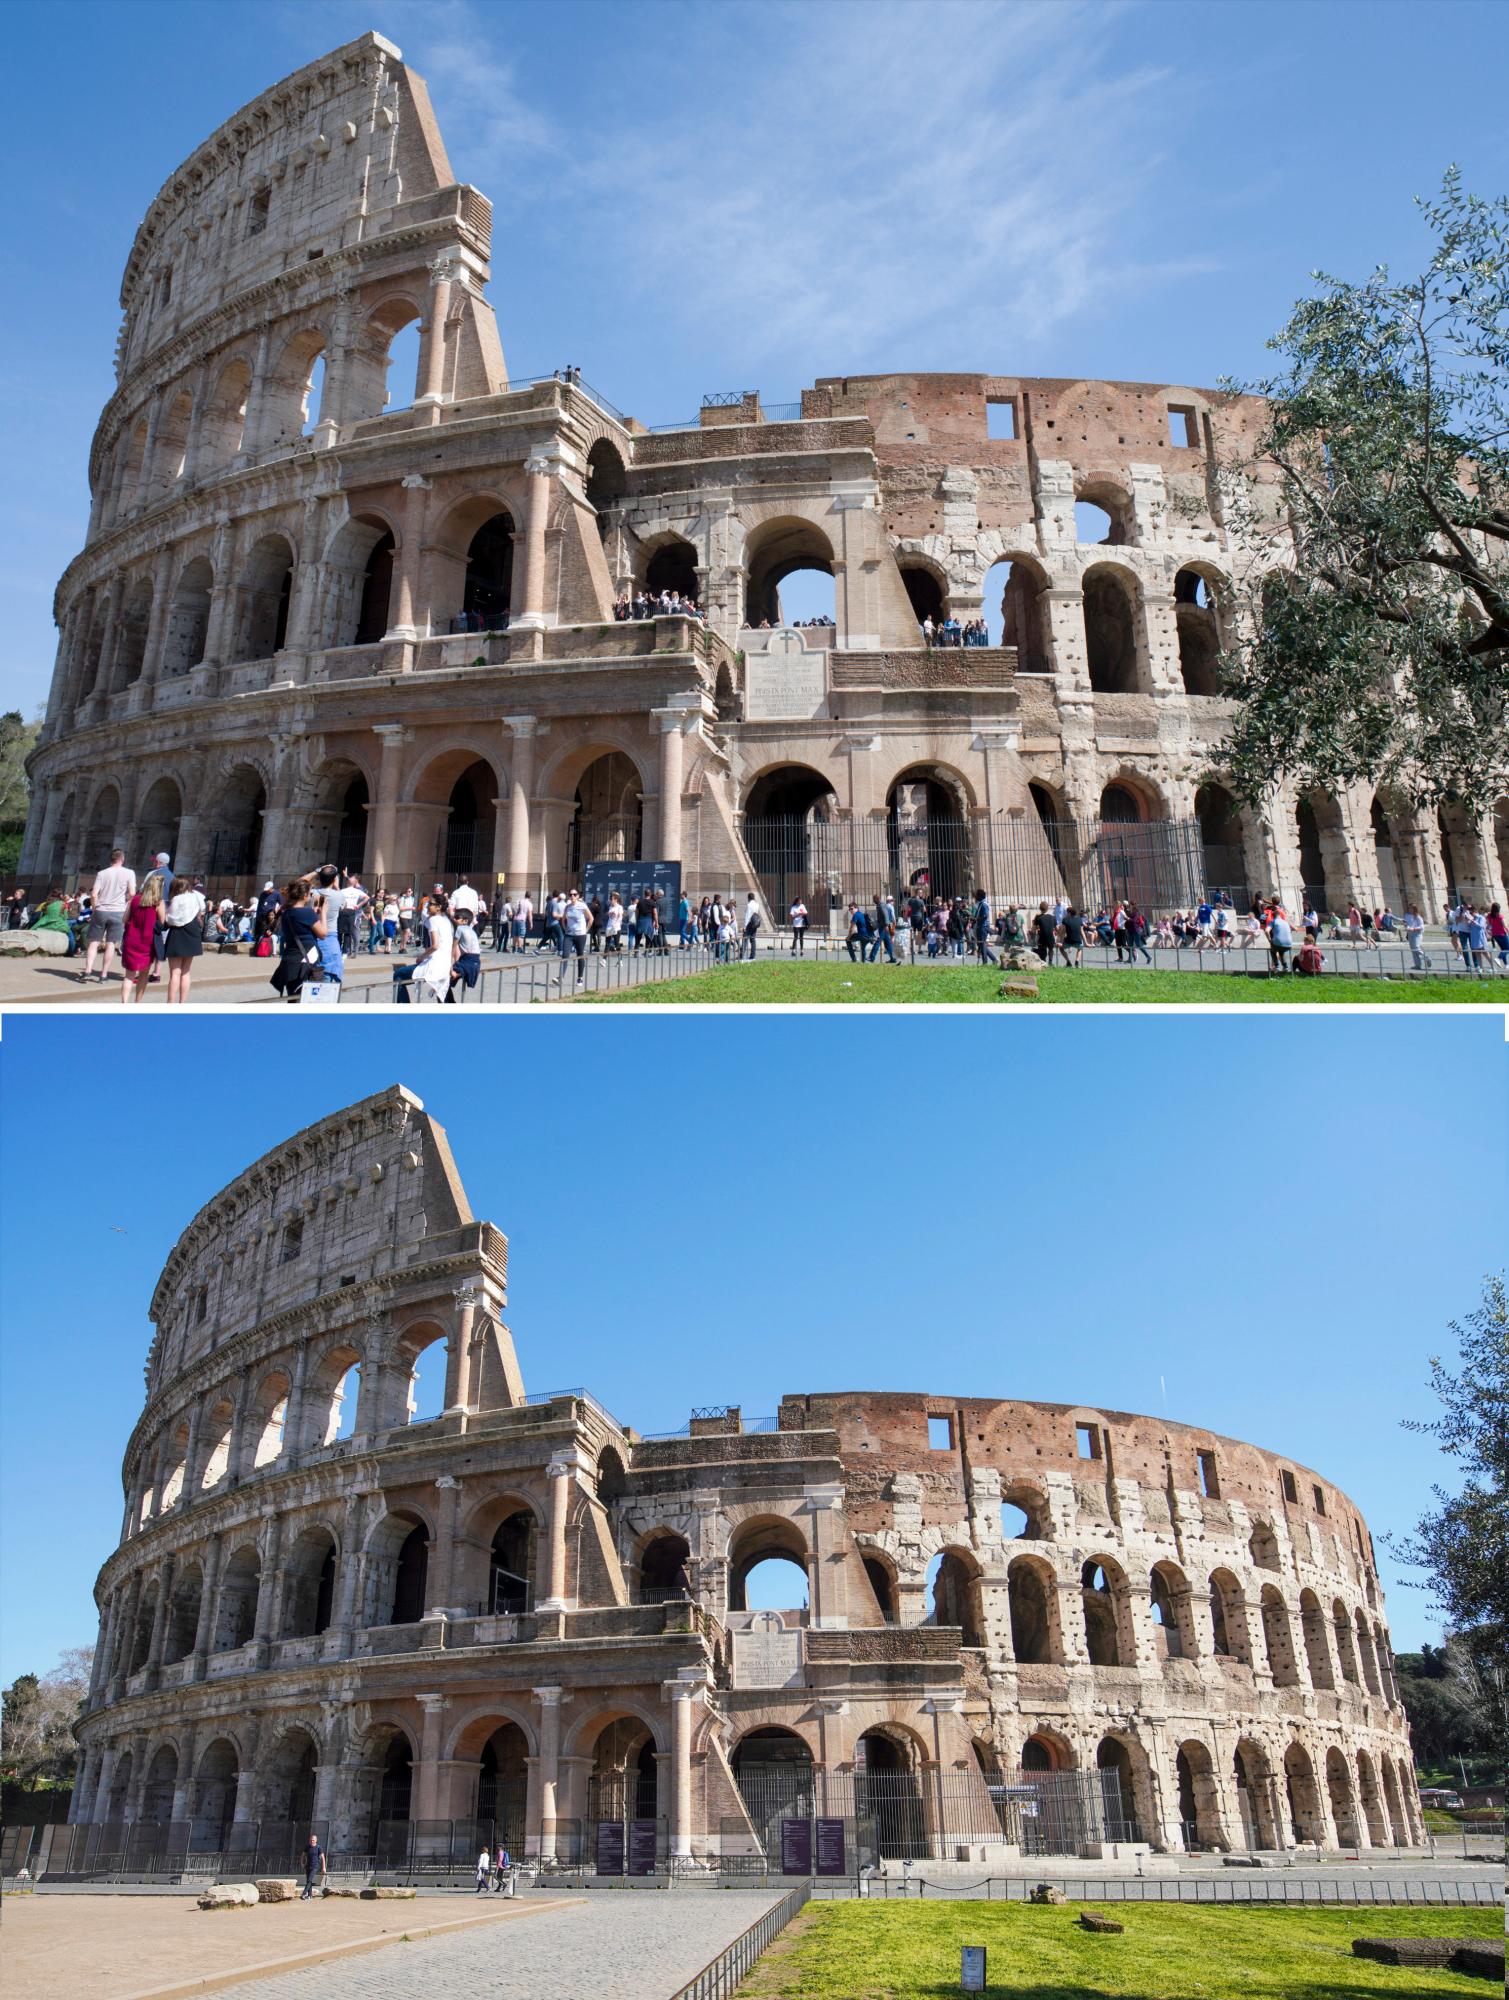 En esta imagen combinada, el antiguo Coliseo romano, arriba a las 12:49 del domingo 8 de abril de 2018, y debajo a las 13:00 del miércoles 11 de marzo de 2020. El grave brote de un nuevo coronavirus en Italia ha vaciado los monumentos de turistas y romanos.